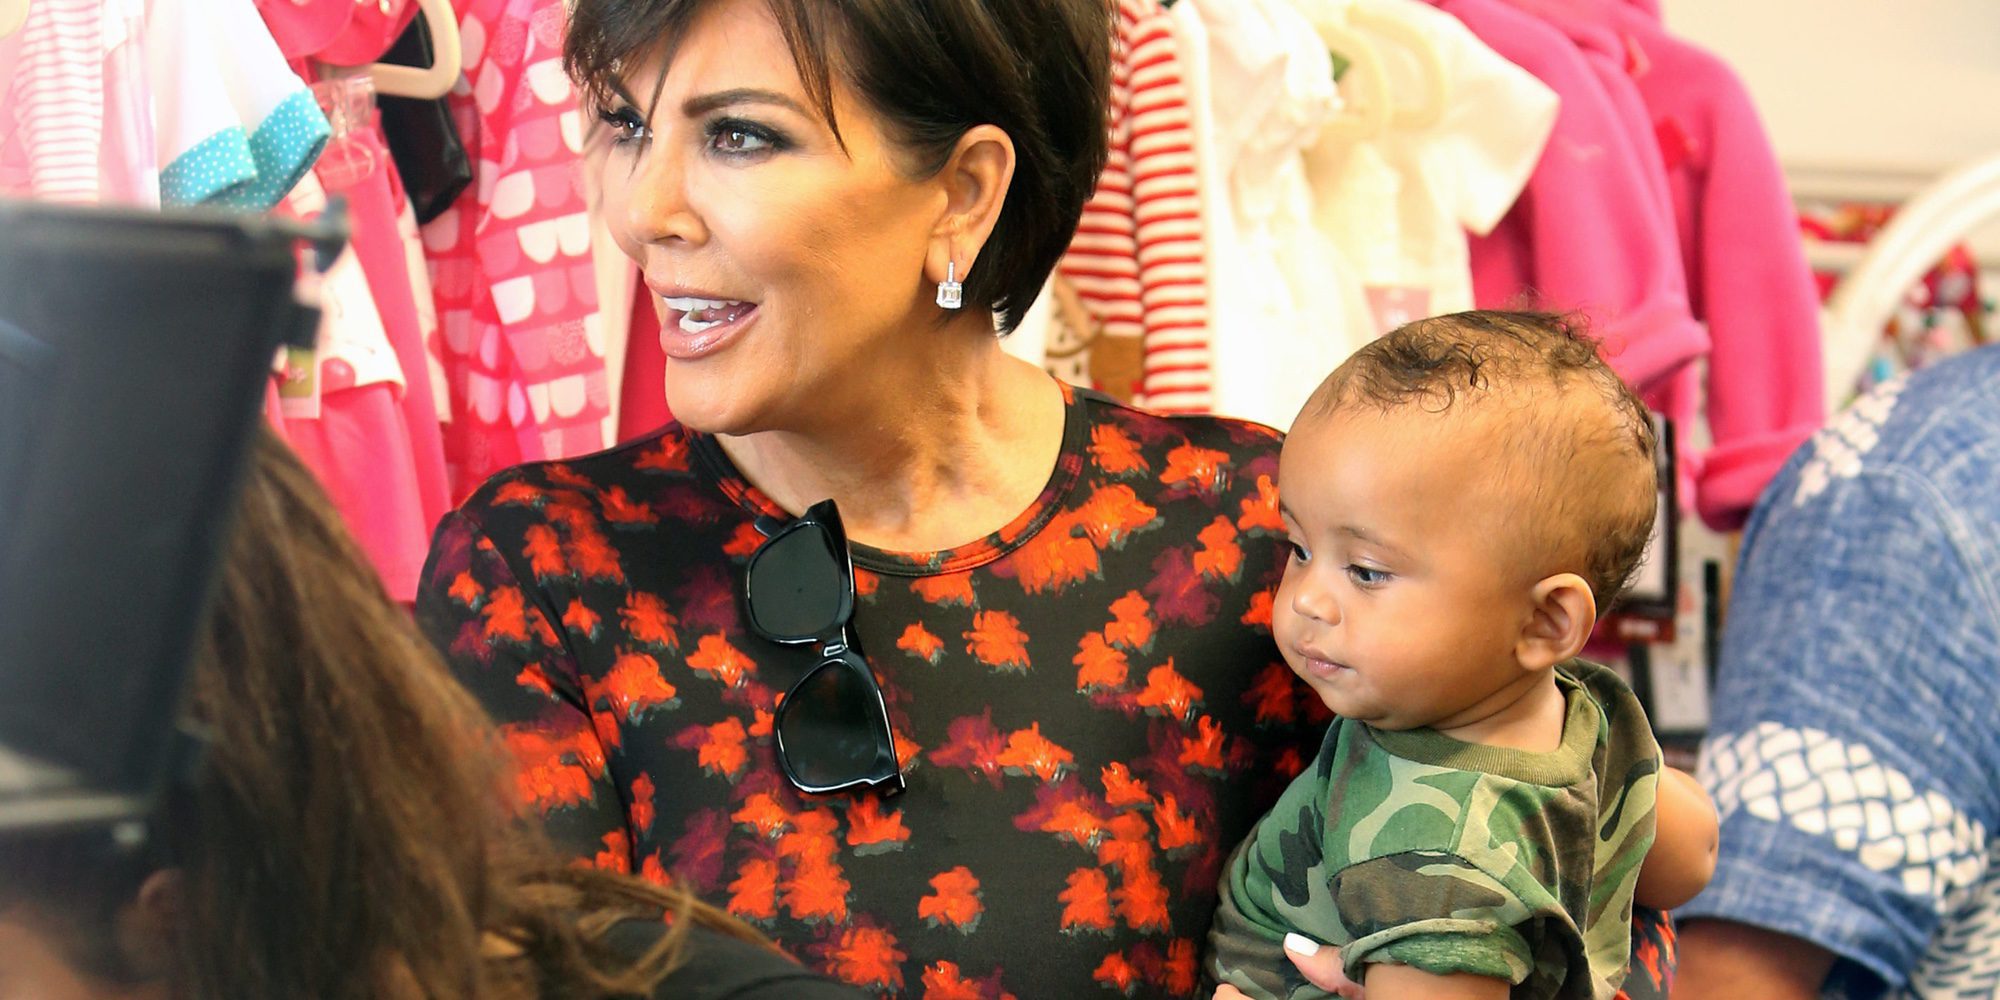 Kim Kardashian comparte un enternecedor vídeo jugando con el pequeño Saint West